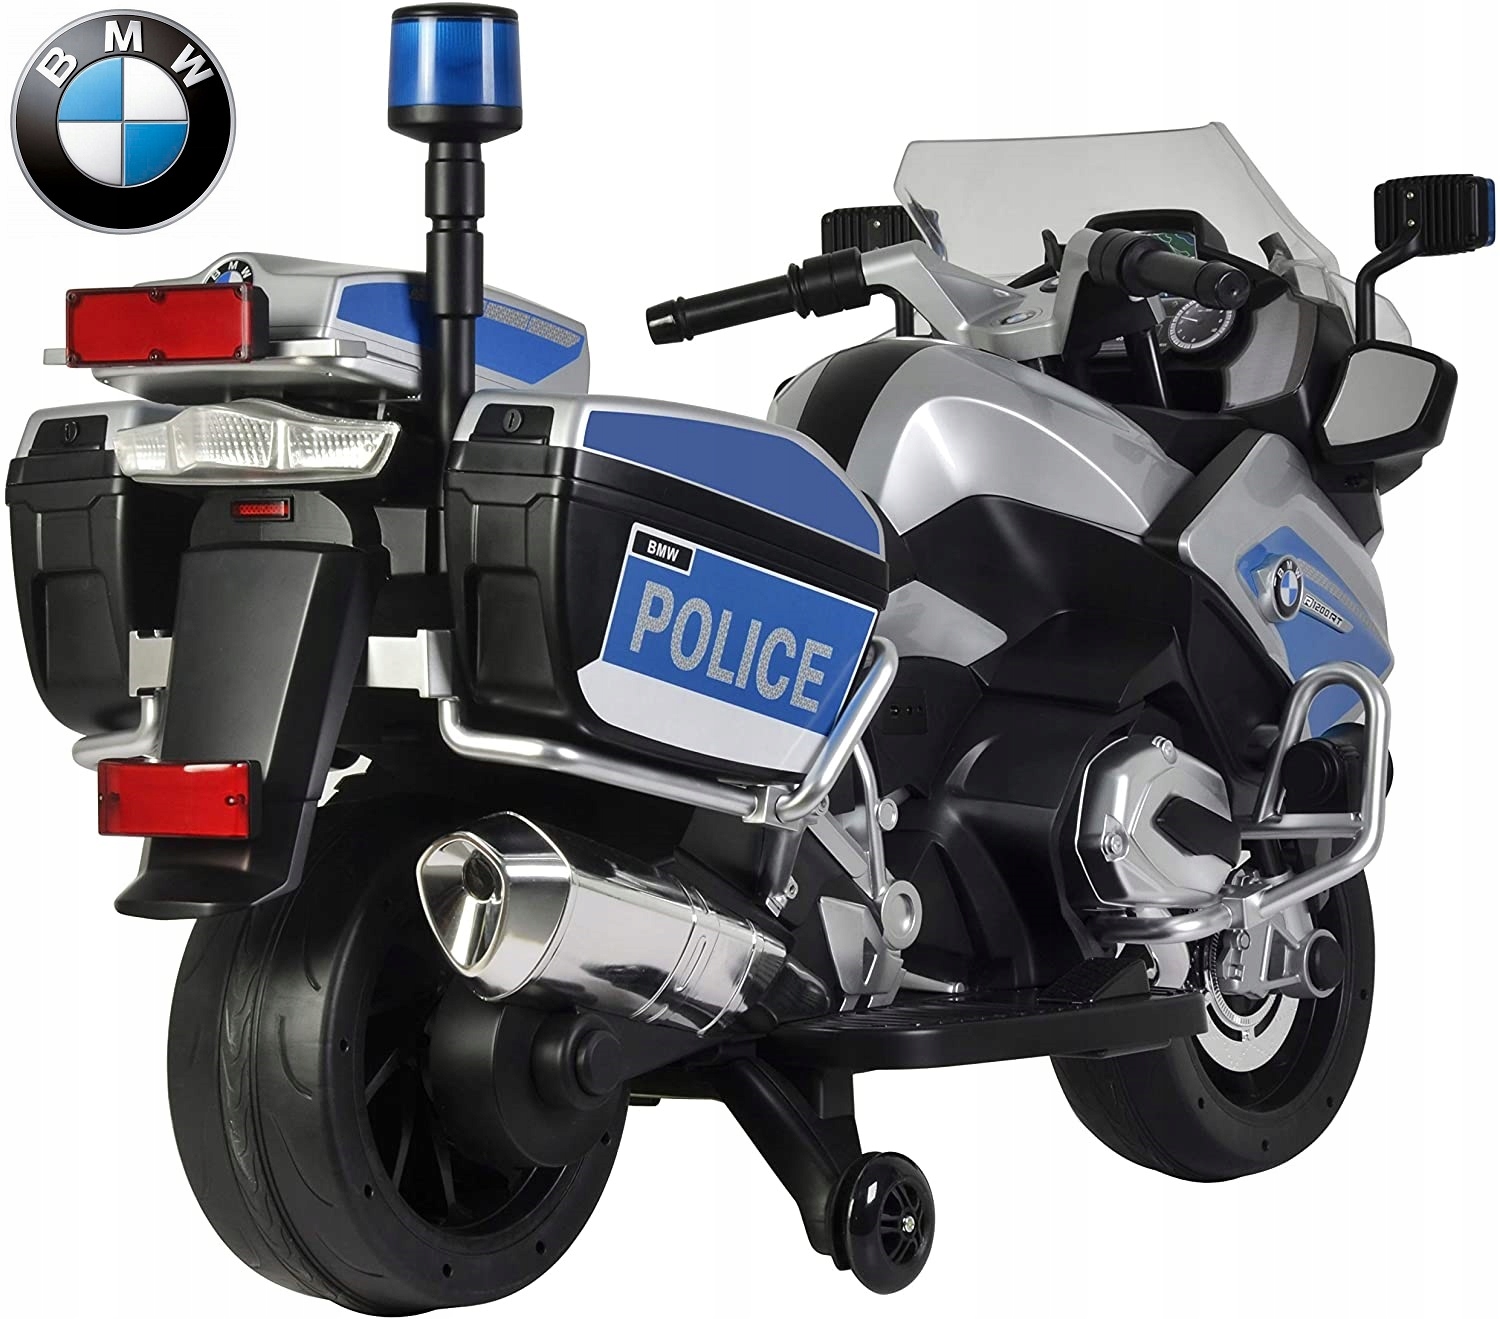 BMW R1200 POLICYJNY duży motocykl na akumulator koła EVA do 30kg moc 90WAT Kod producenta BMW R1200RT POLICE